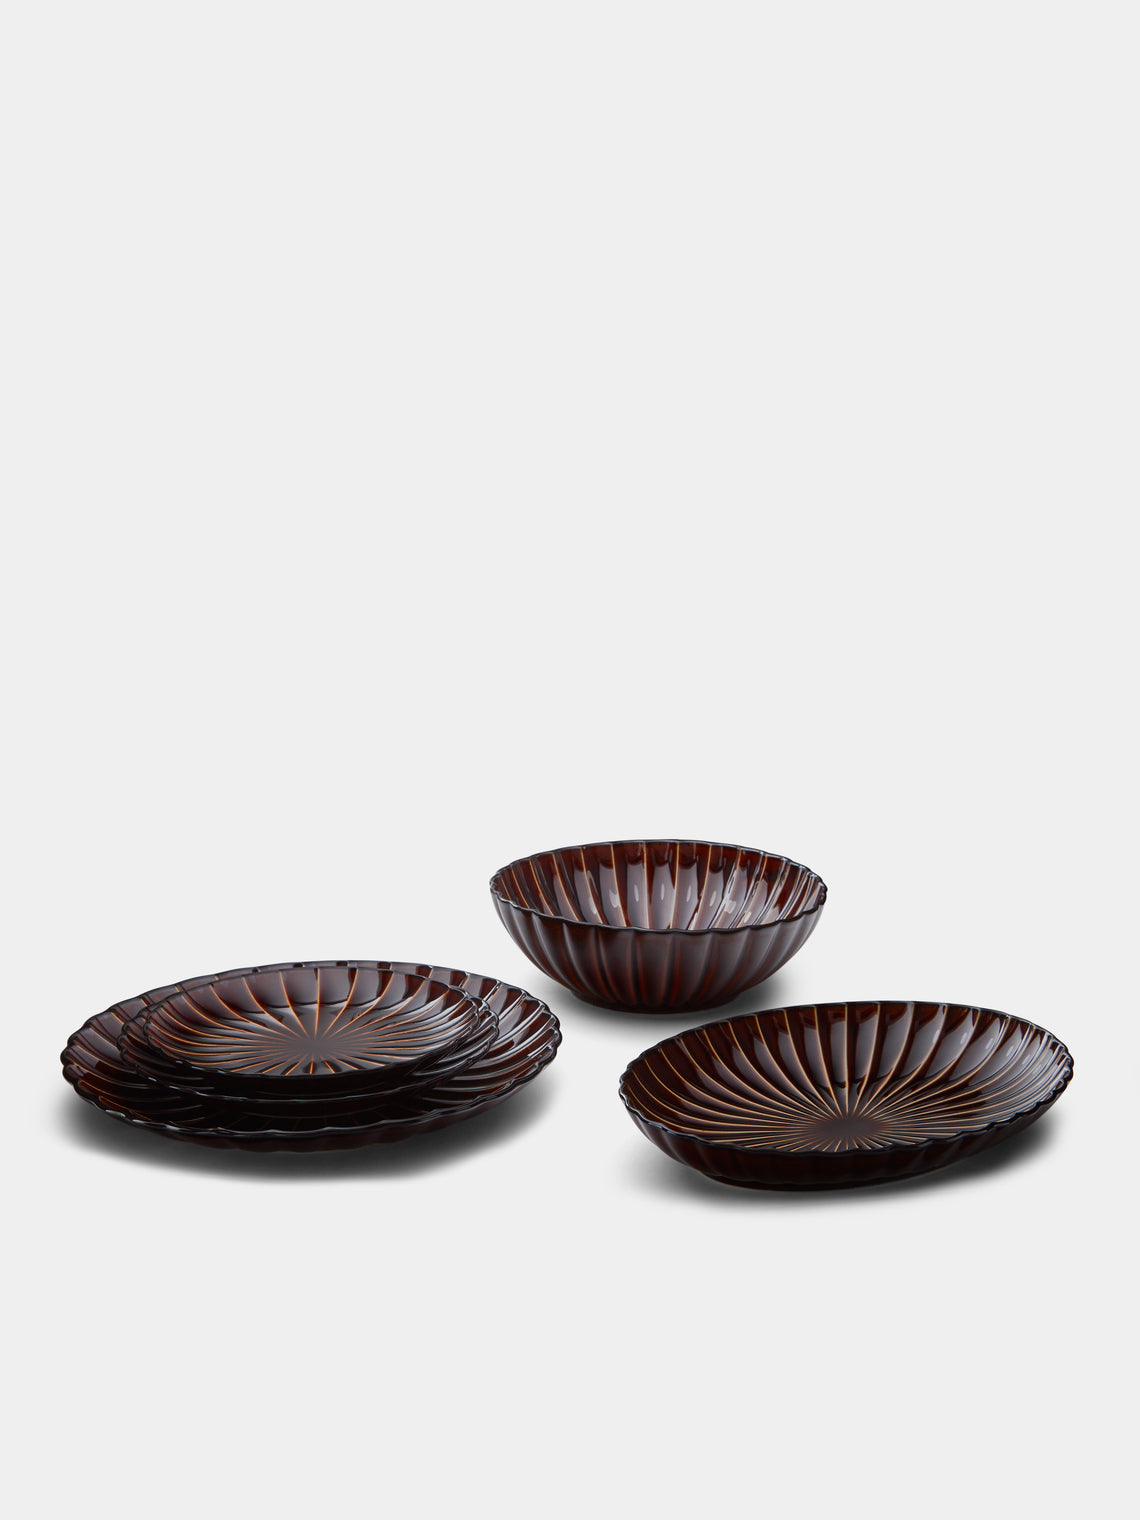 Kaneko Kohyo - Giyaman Urushi Ceramic Dessert Plates (Set of 4) - Brown - ABASK